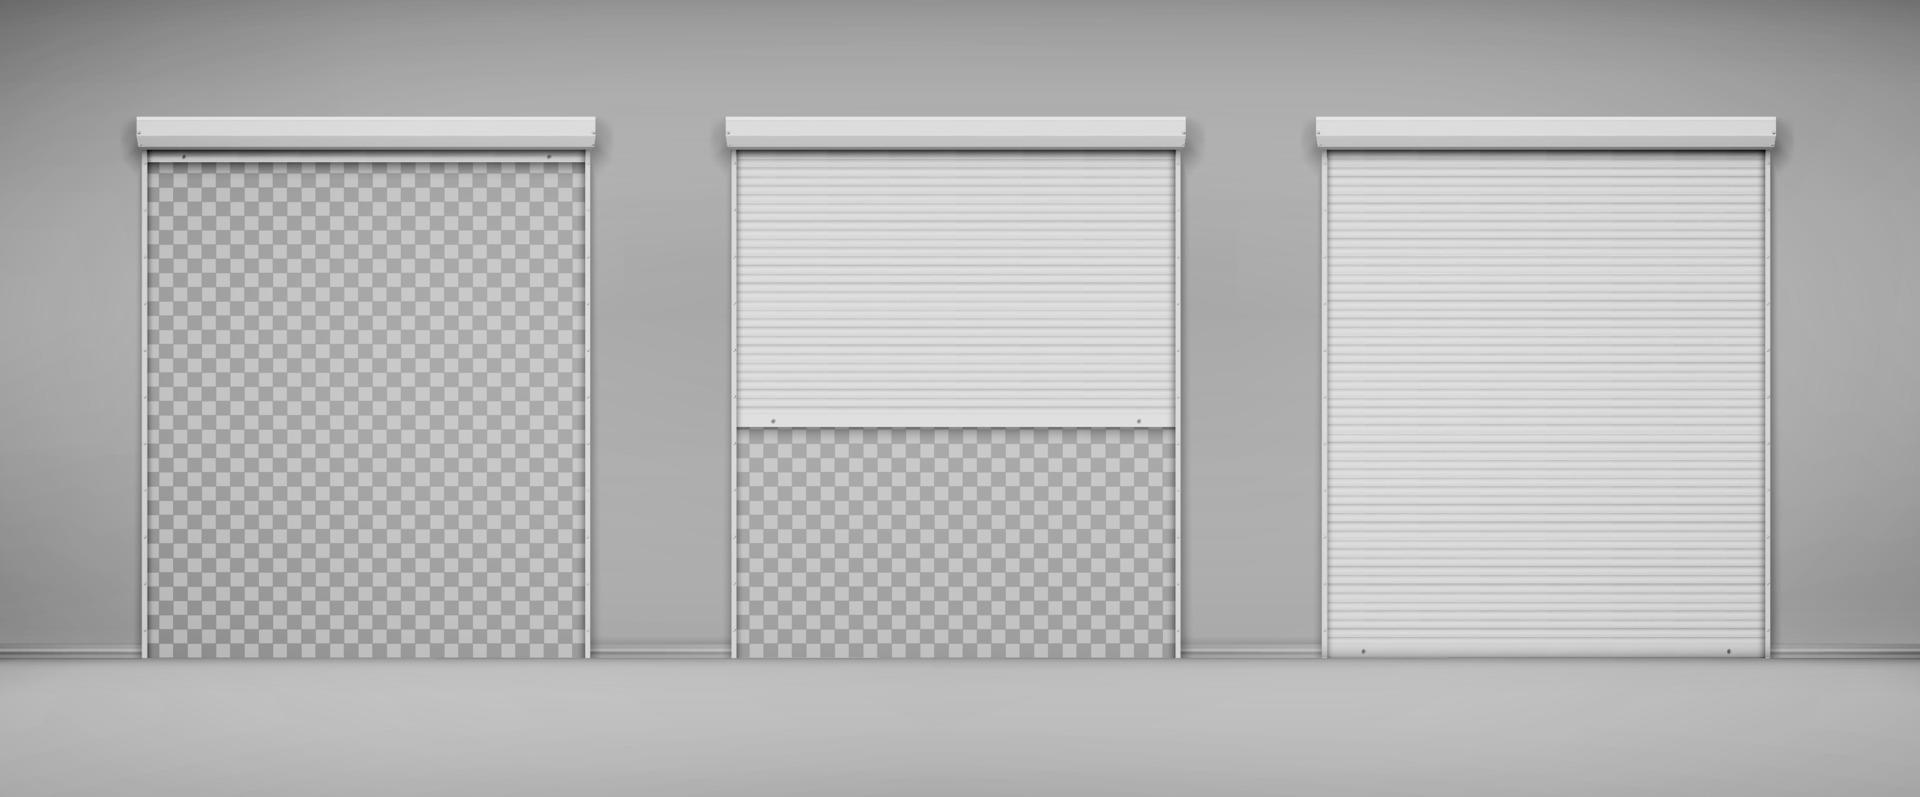 Garage doors, hangar entrance with roller shutters vector